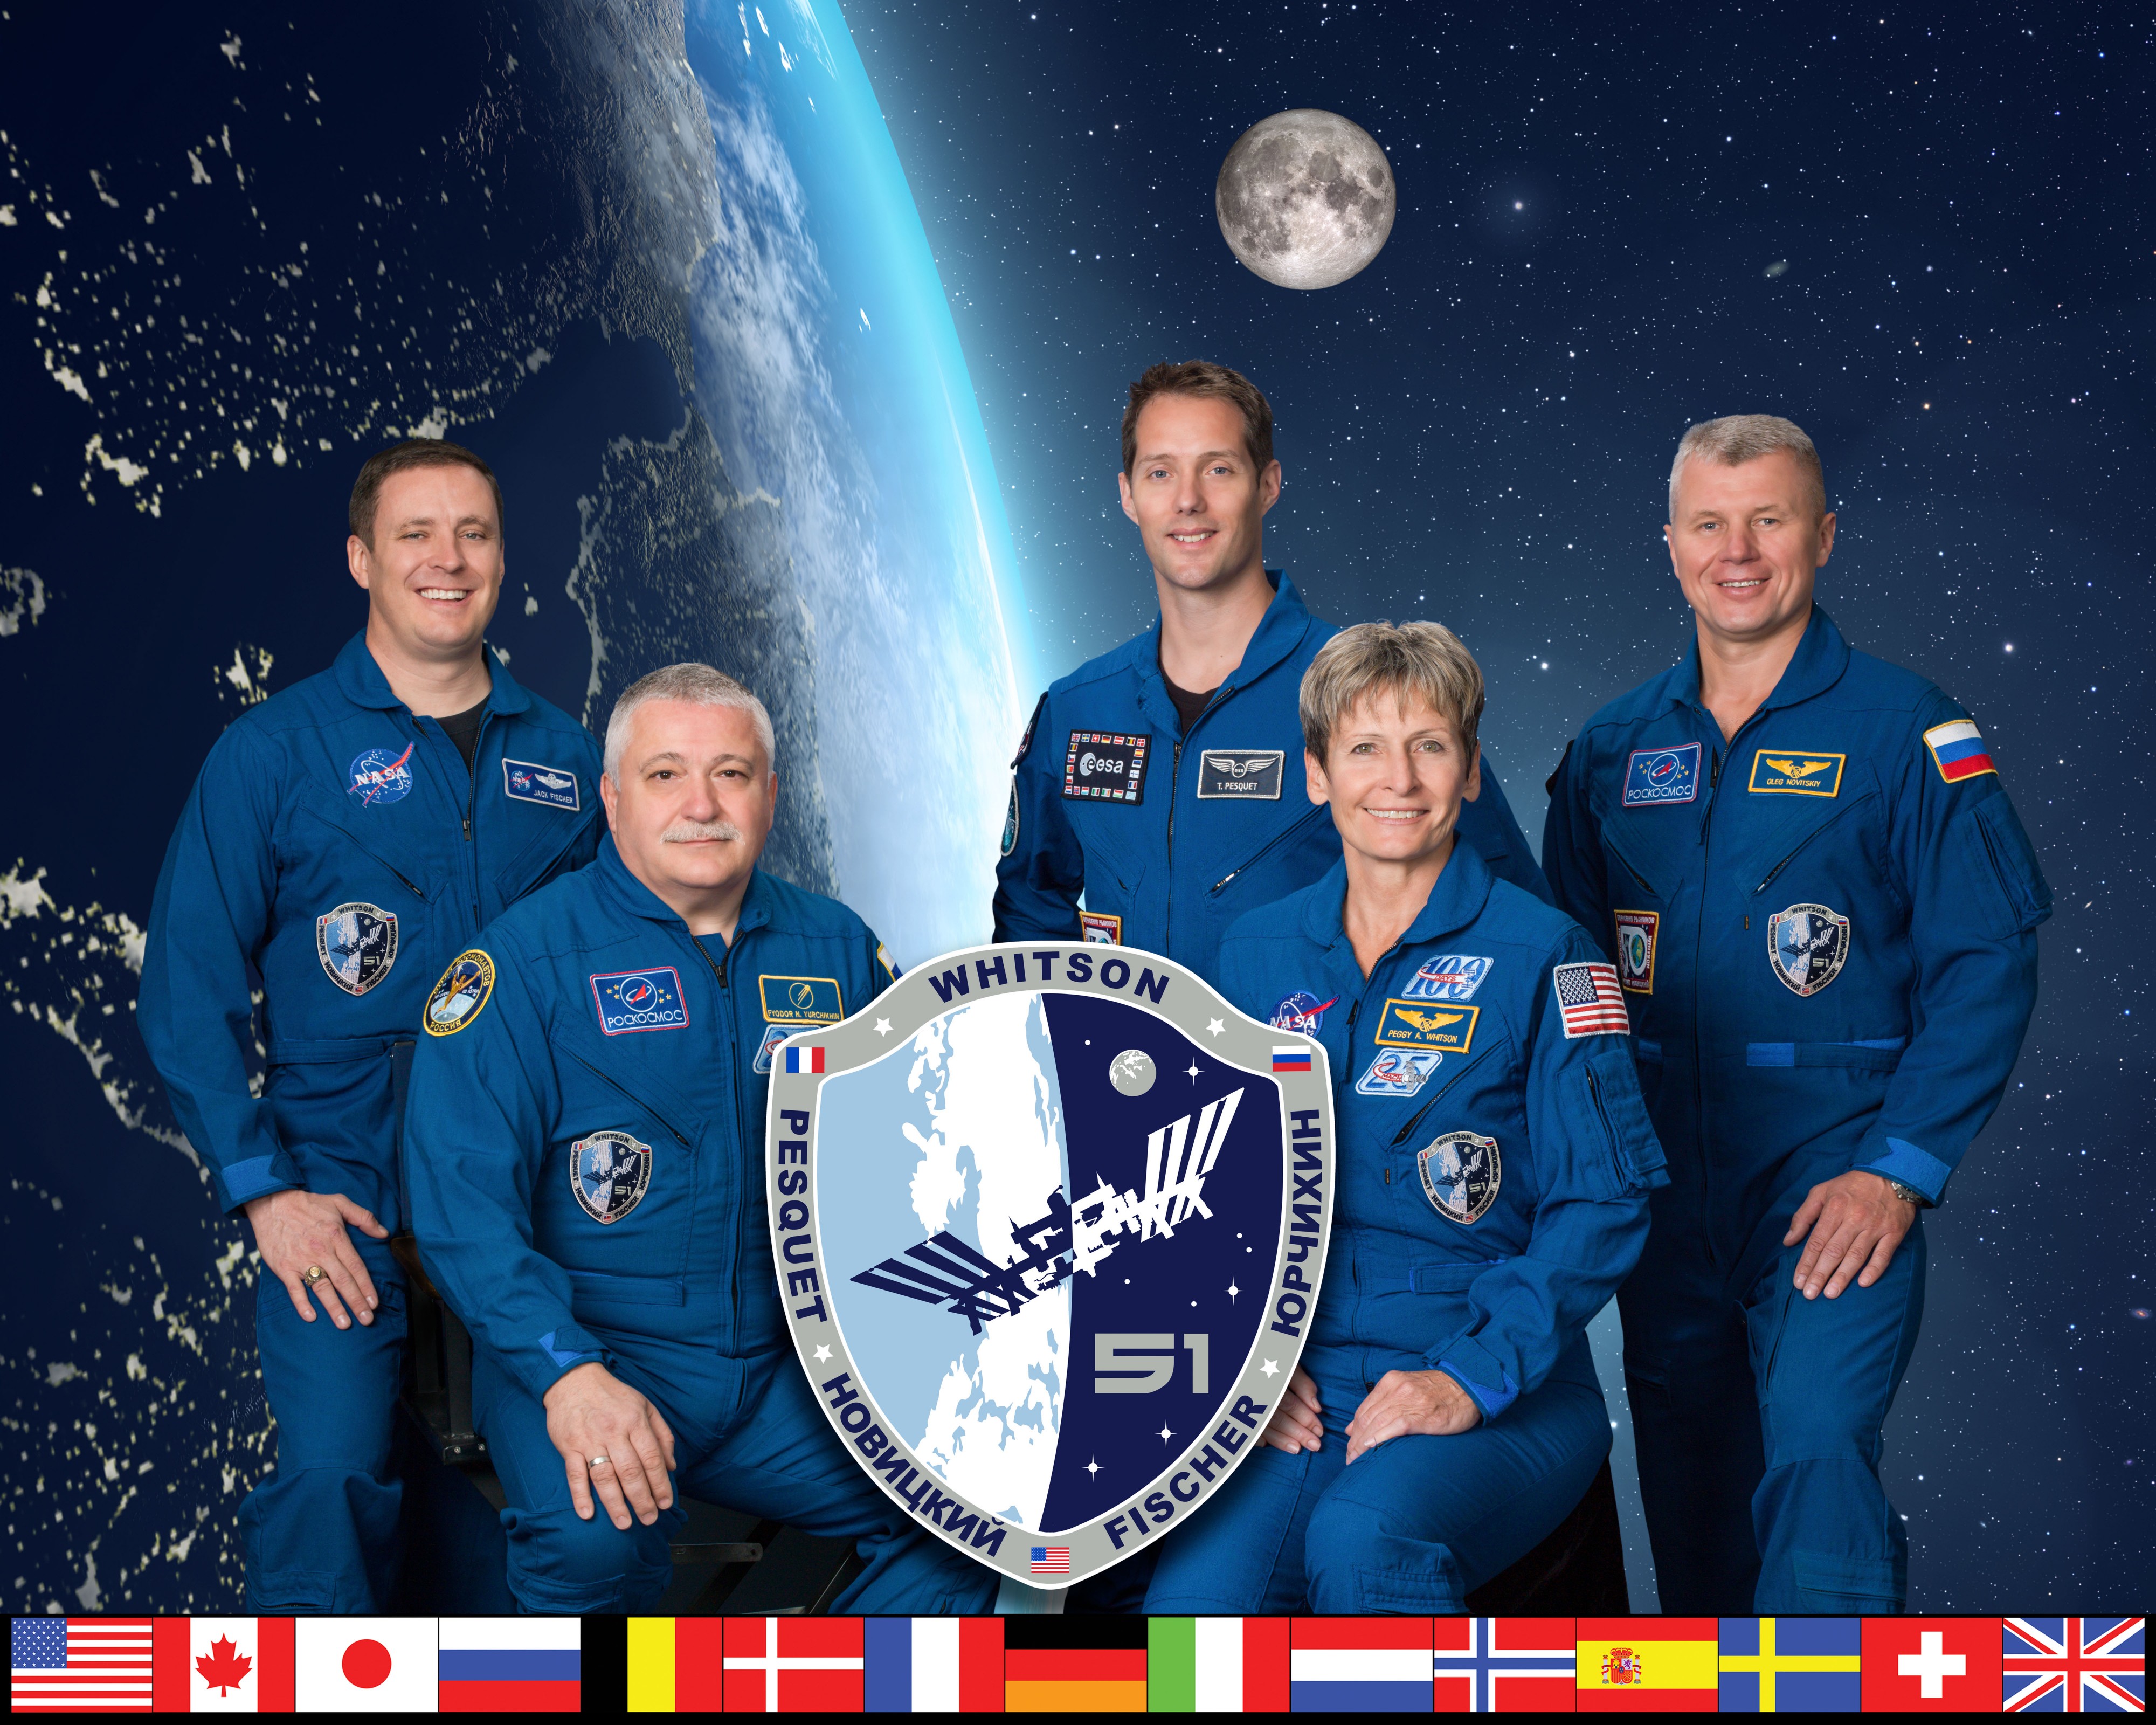 Expedition 51 crew portrait